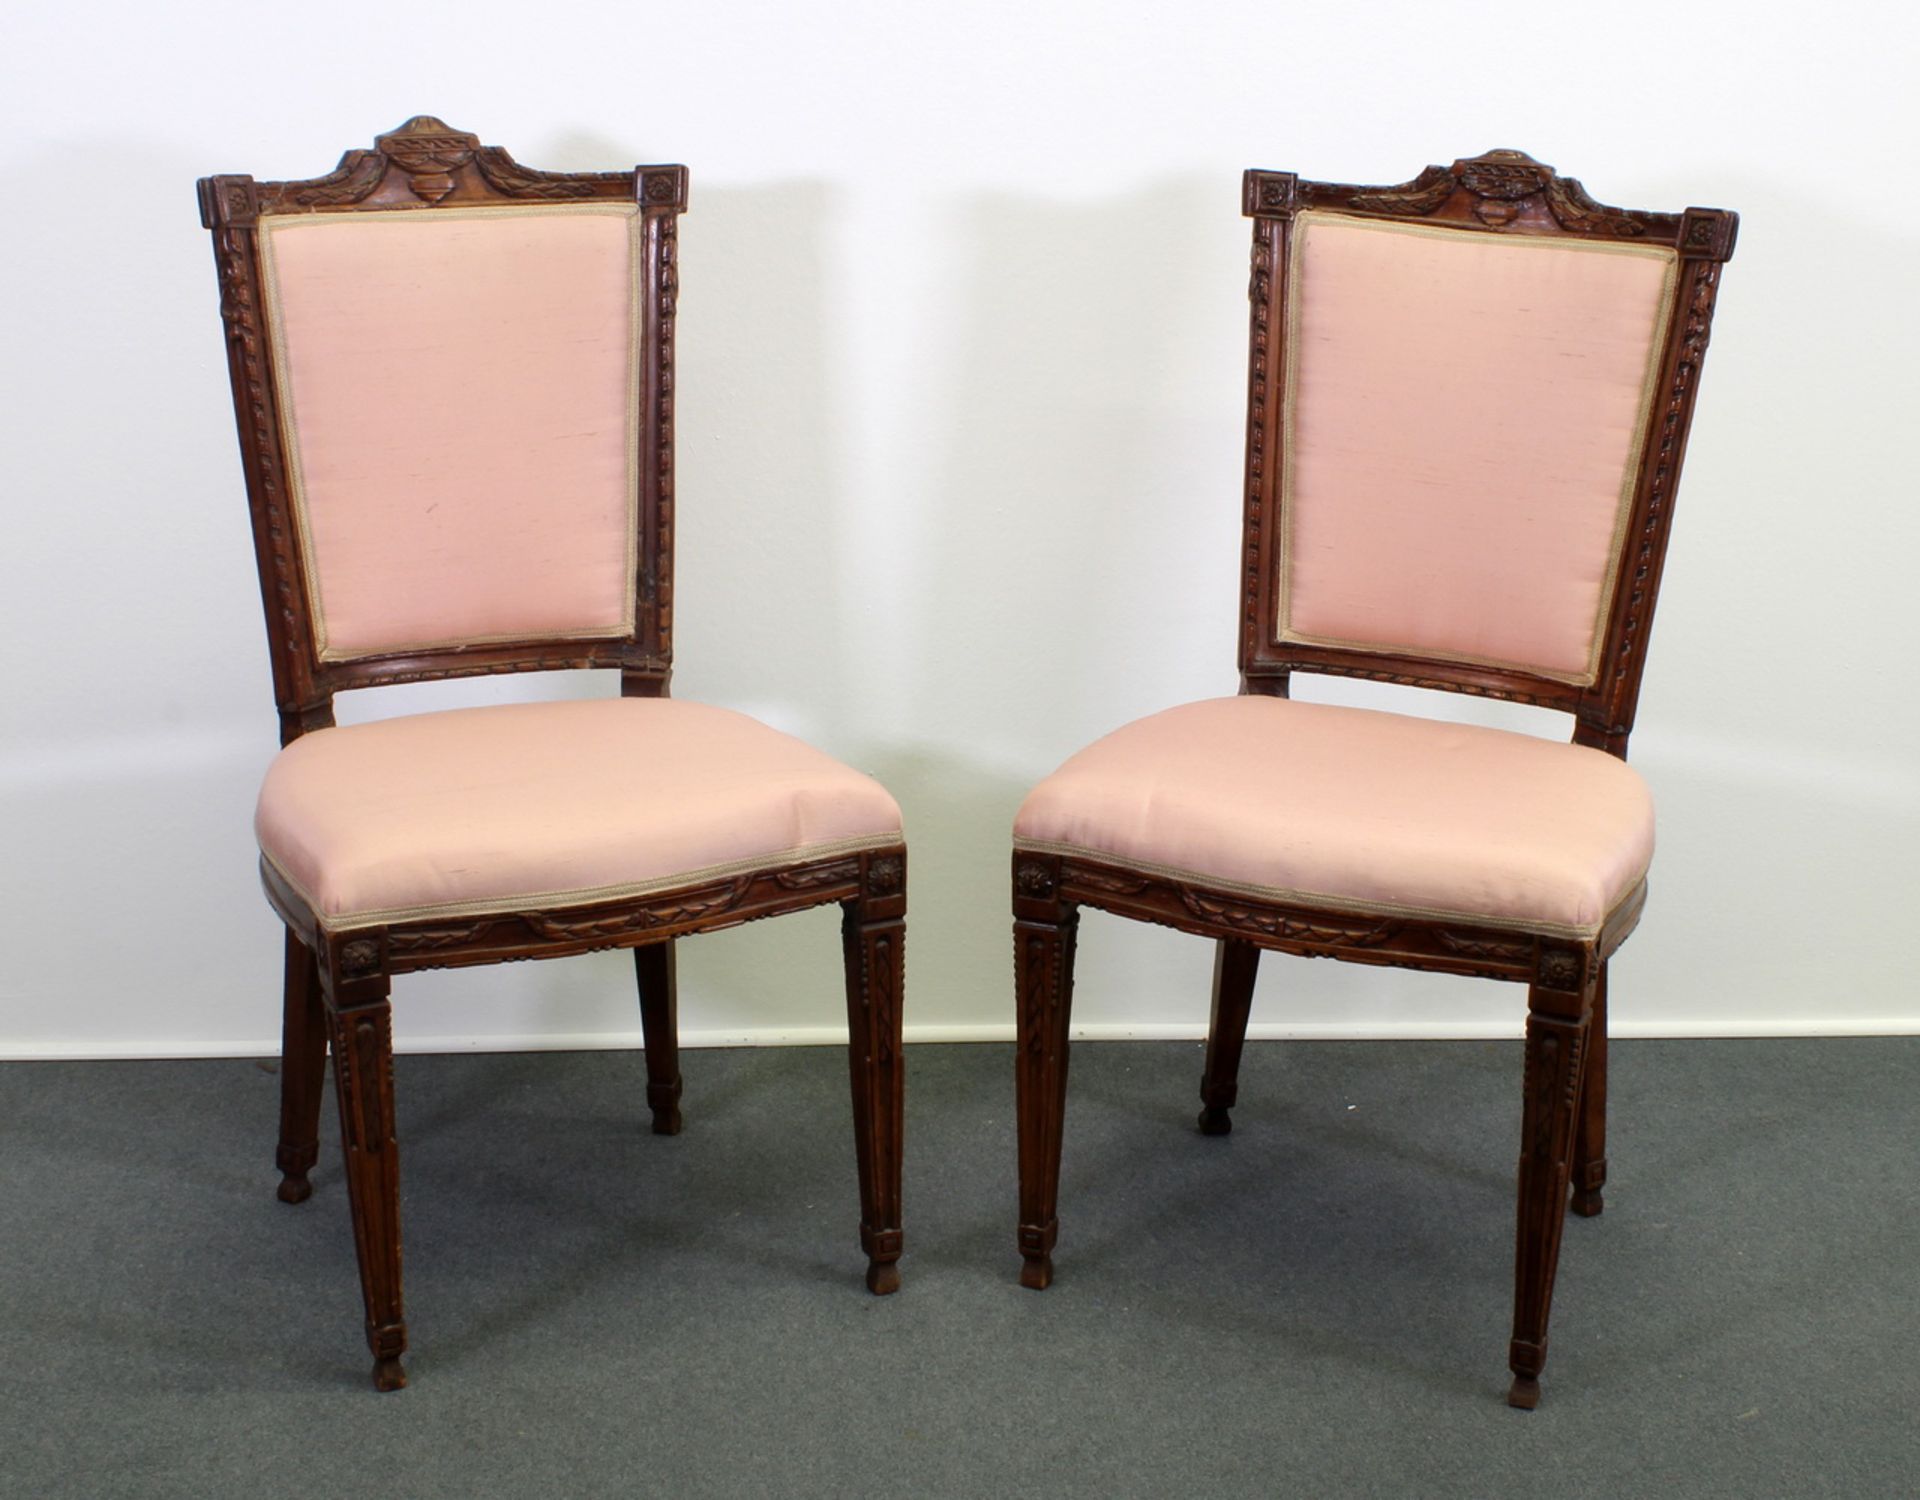 Paar Stühle, Louis Seize, um 1780, Nussholz, Schnitzwerk, erneuerte Sitz- und Rückenpolster, 97 c